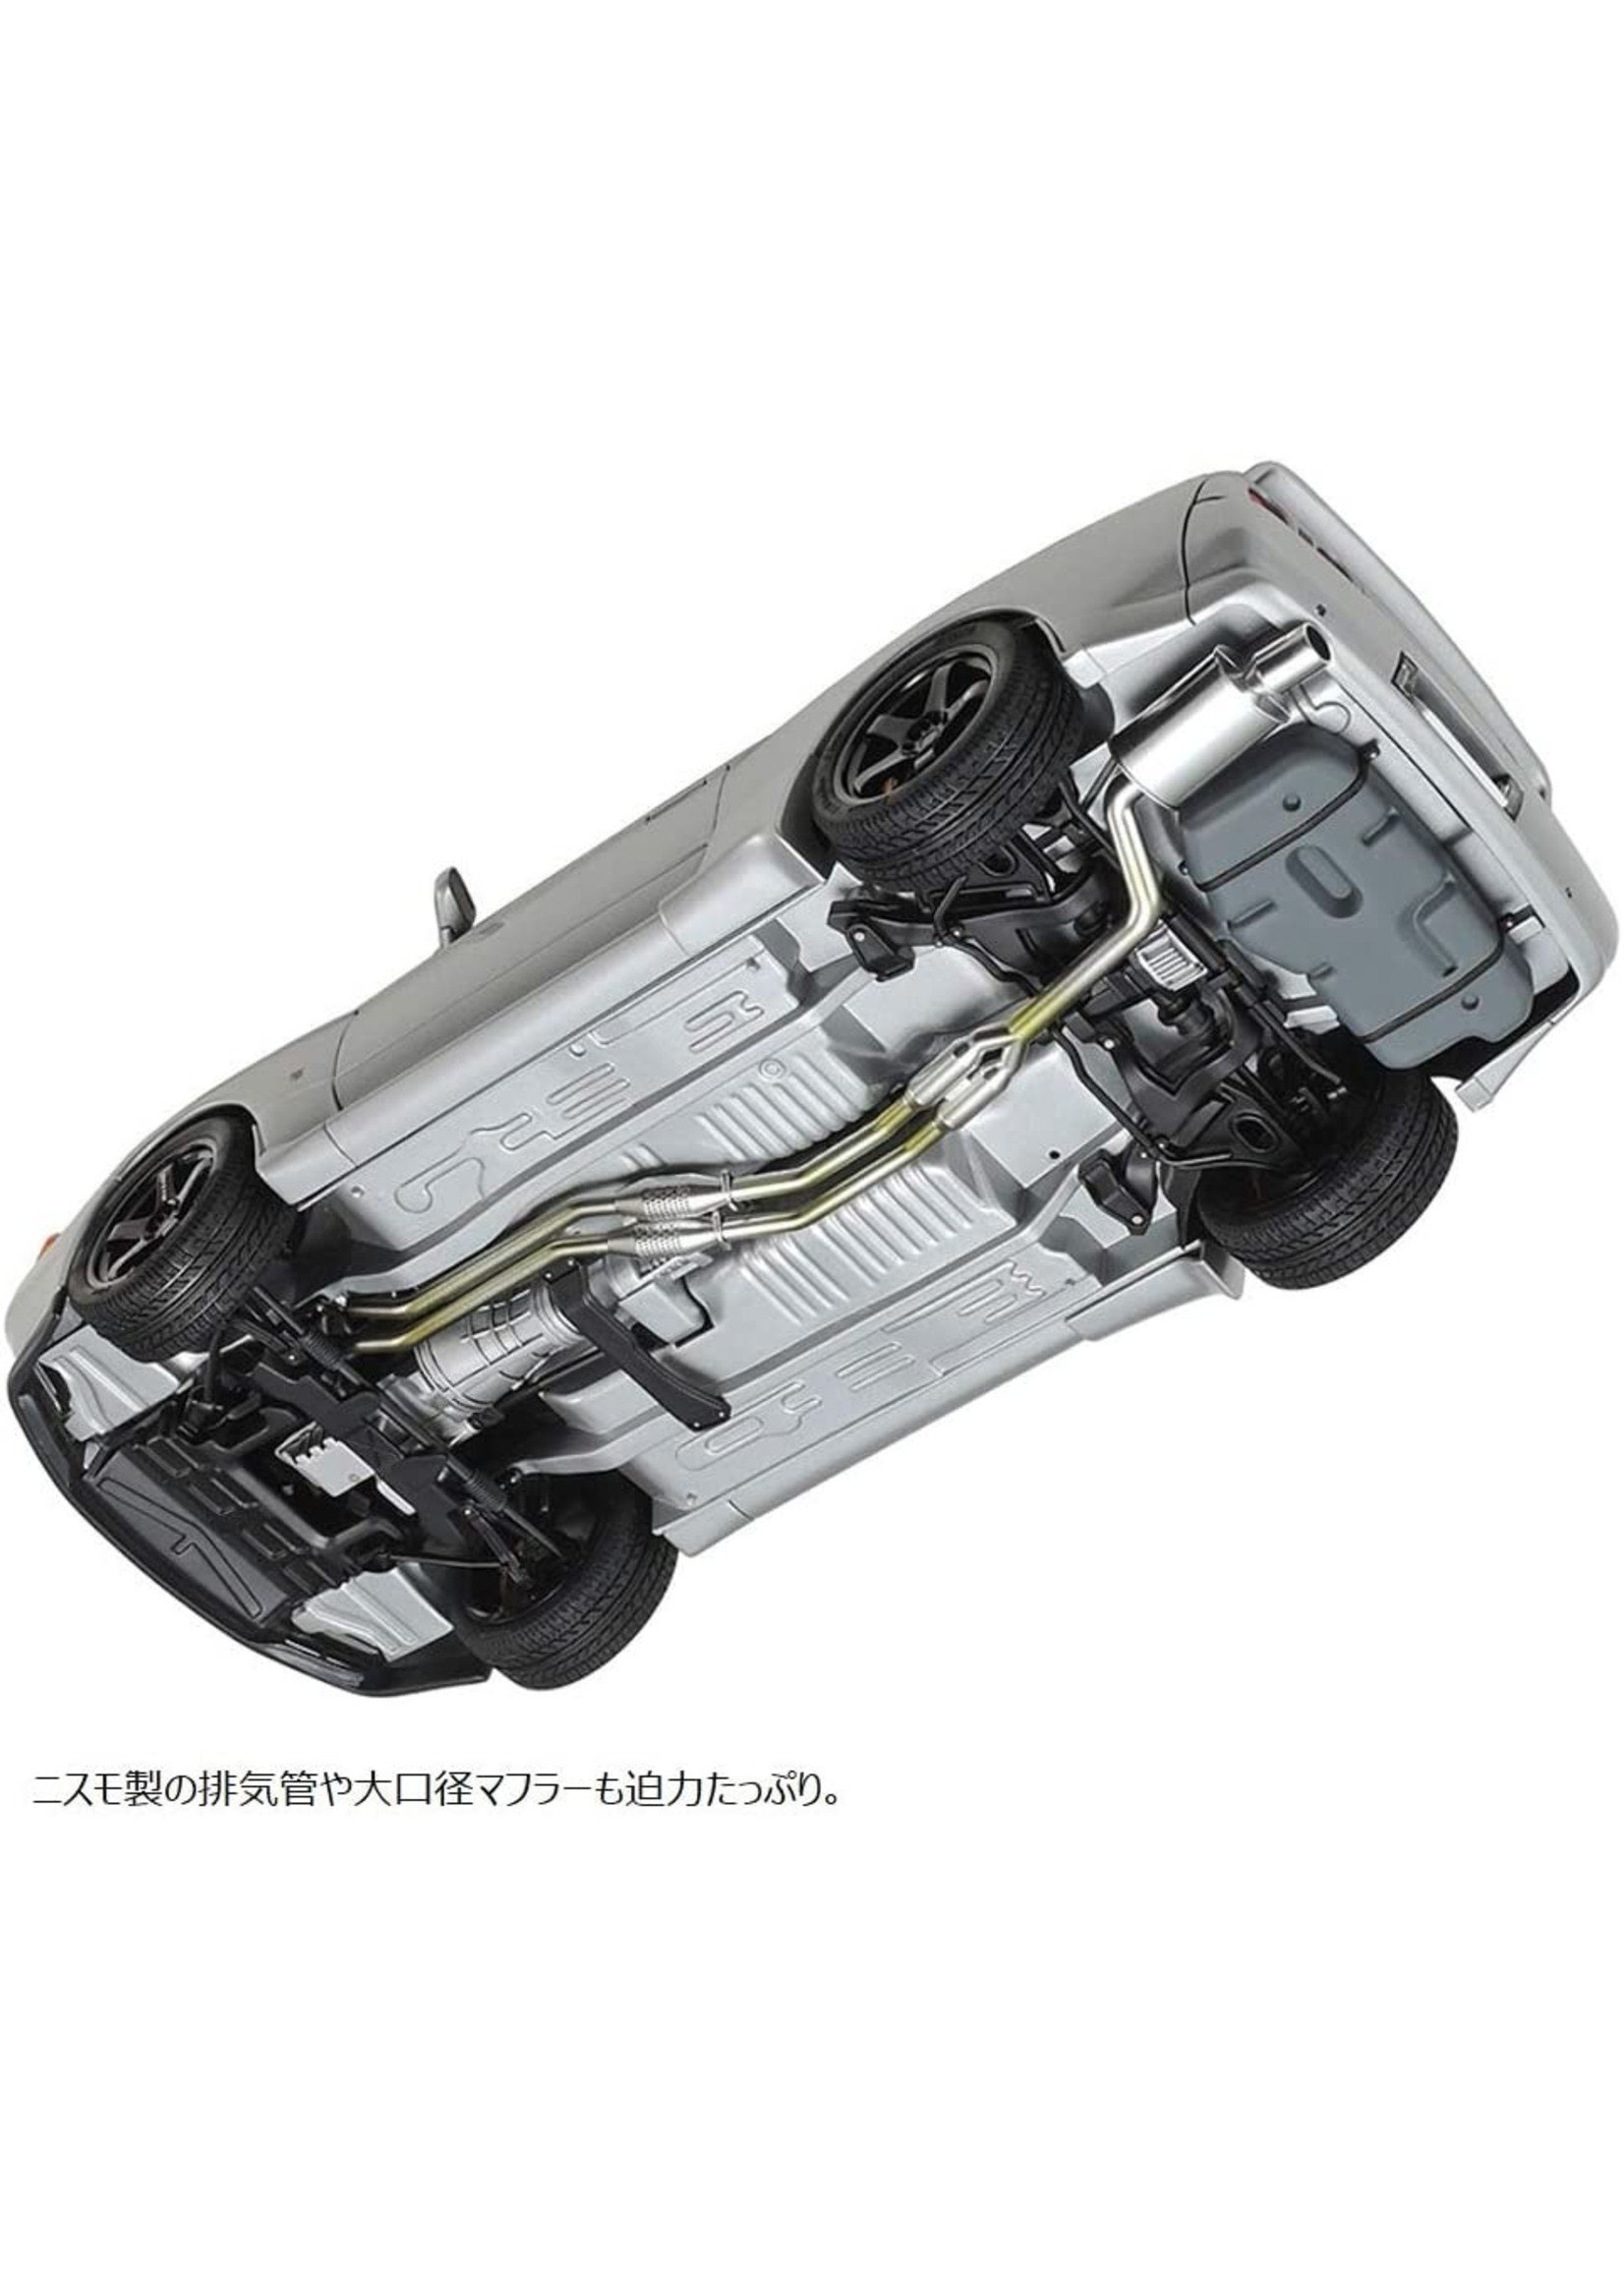 Tamiya 1/24 Nissan Skyline GT-R (R32) Nismo - Custom